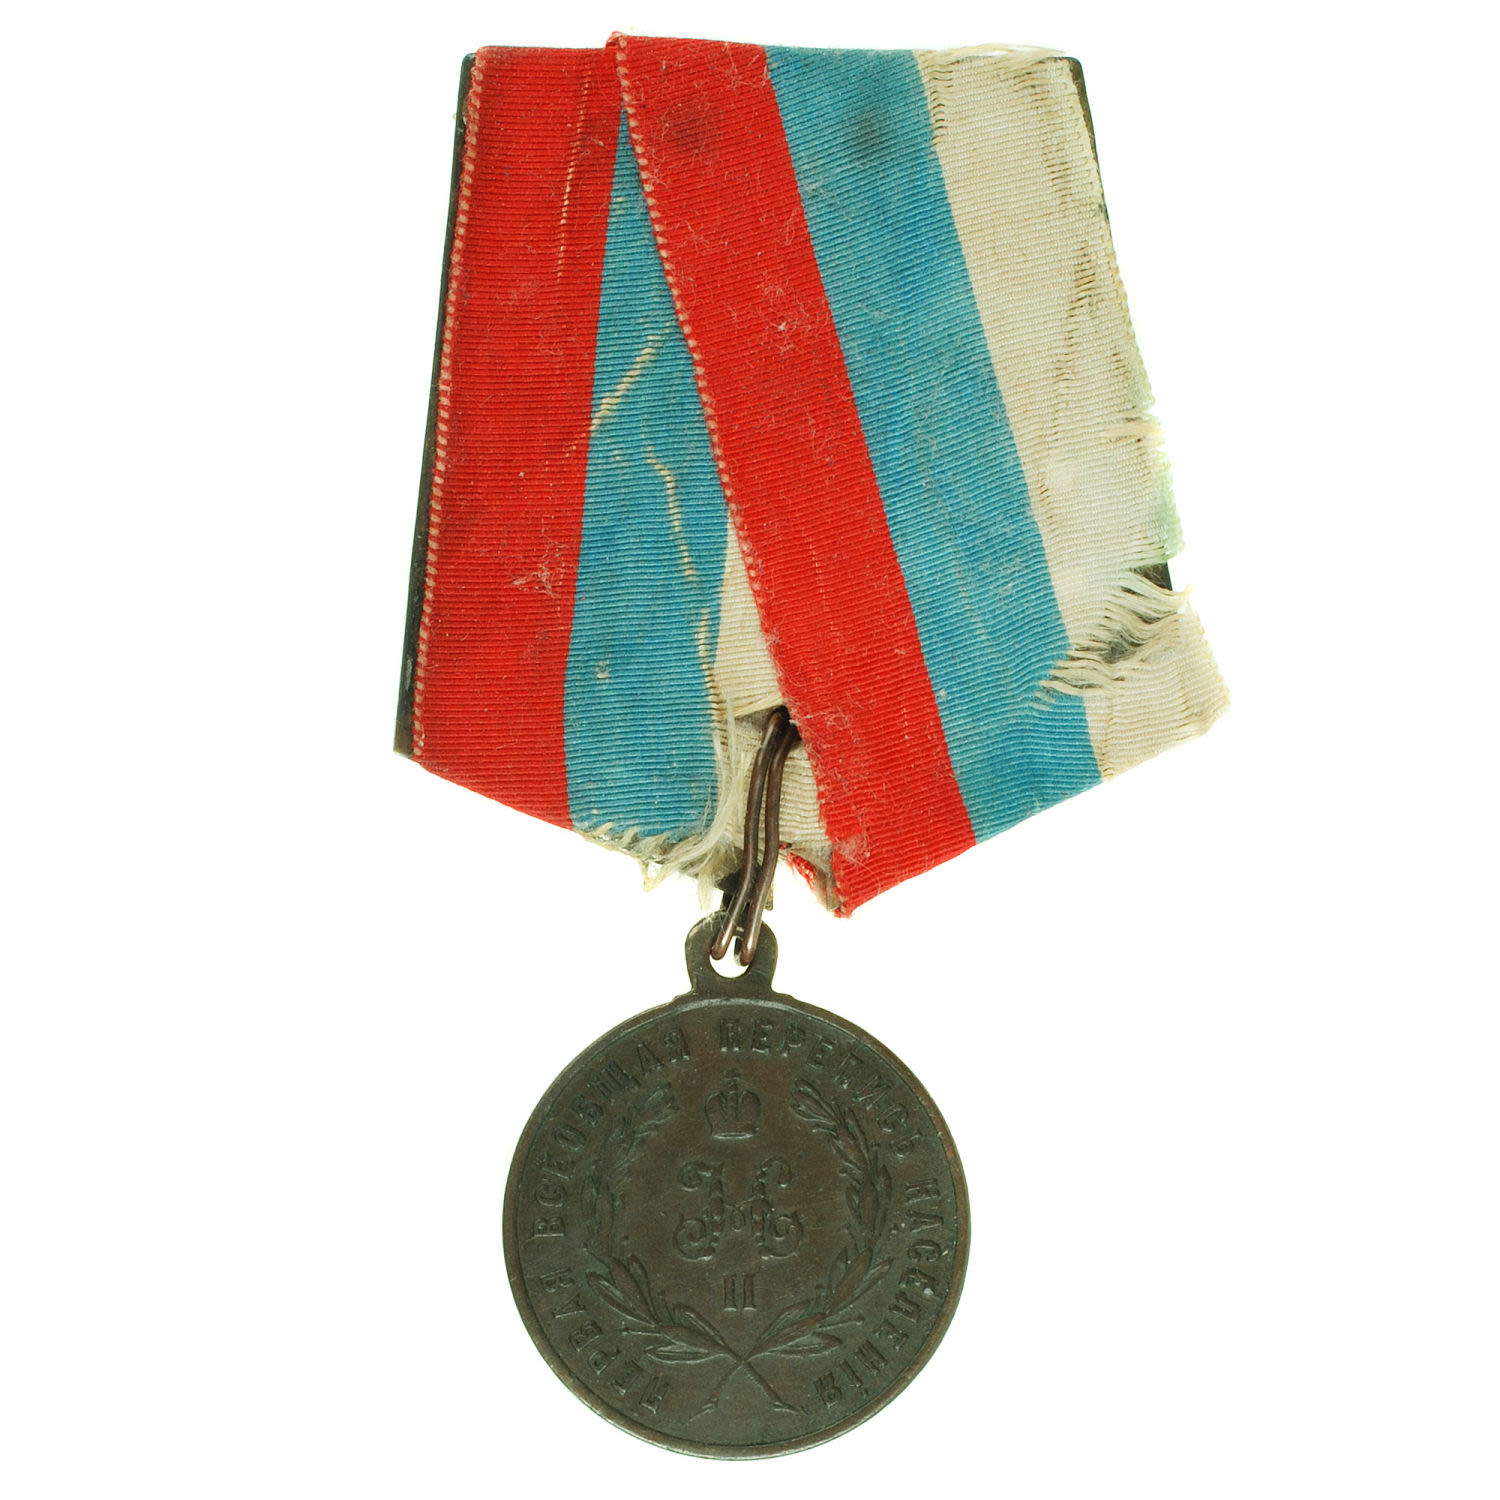 Медаль "За труды по первой всеобщей переписи населения" на колодке с лентой Государственных цветов.